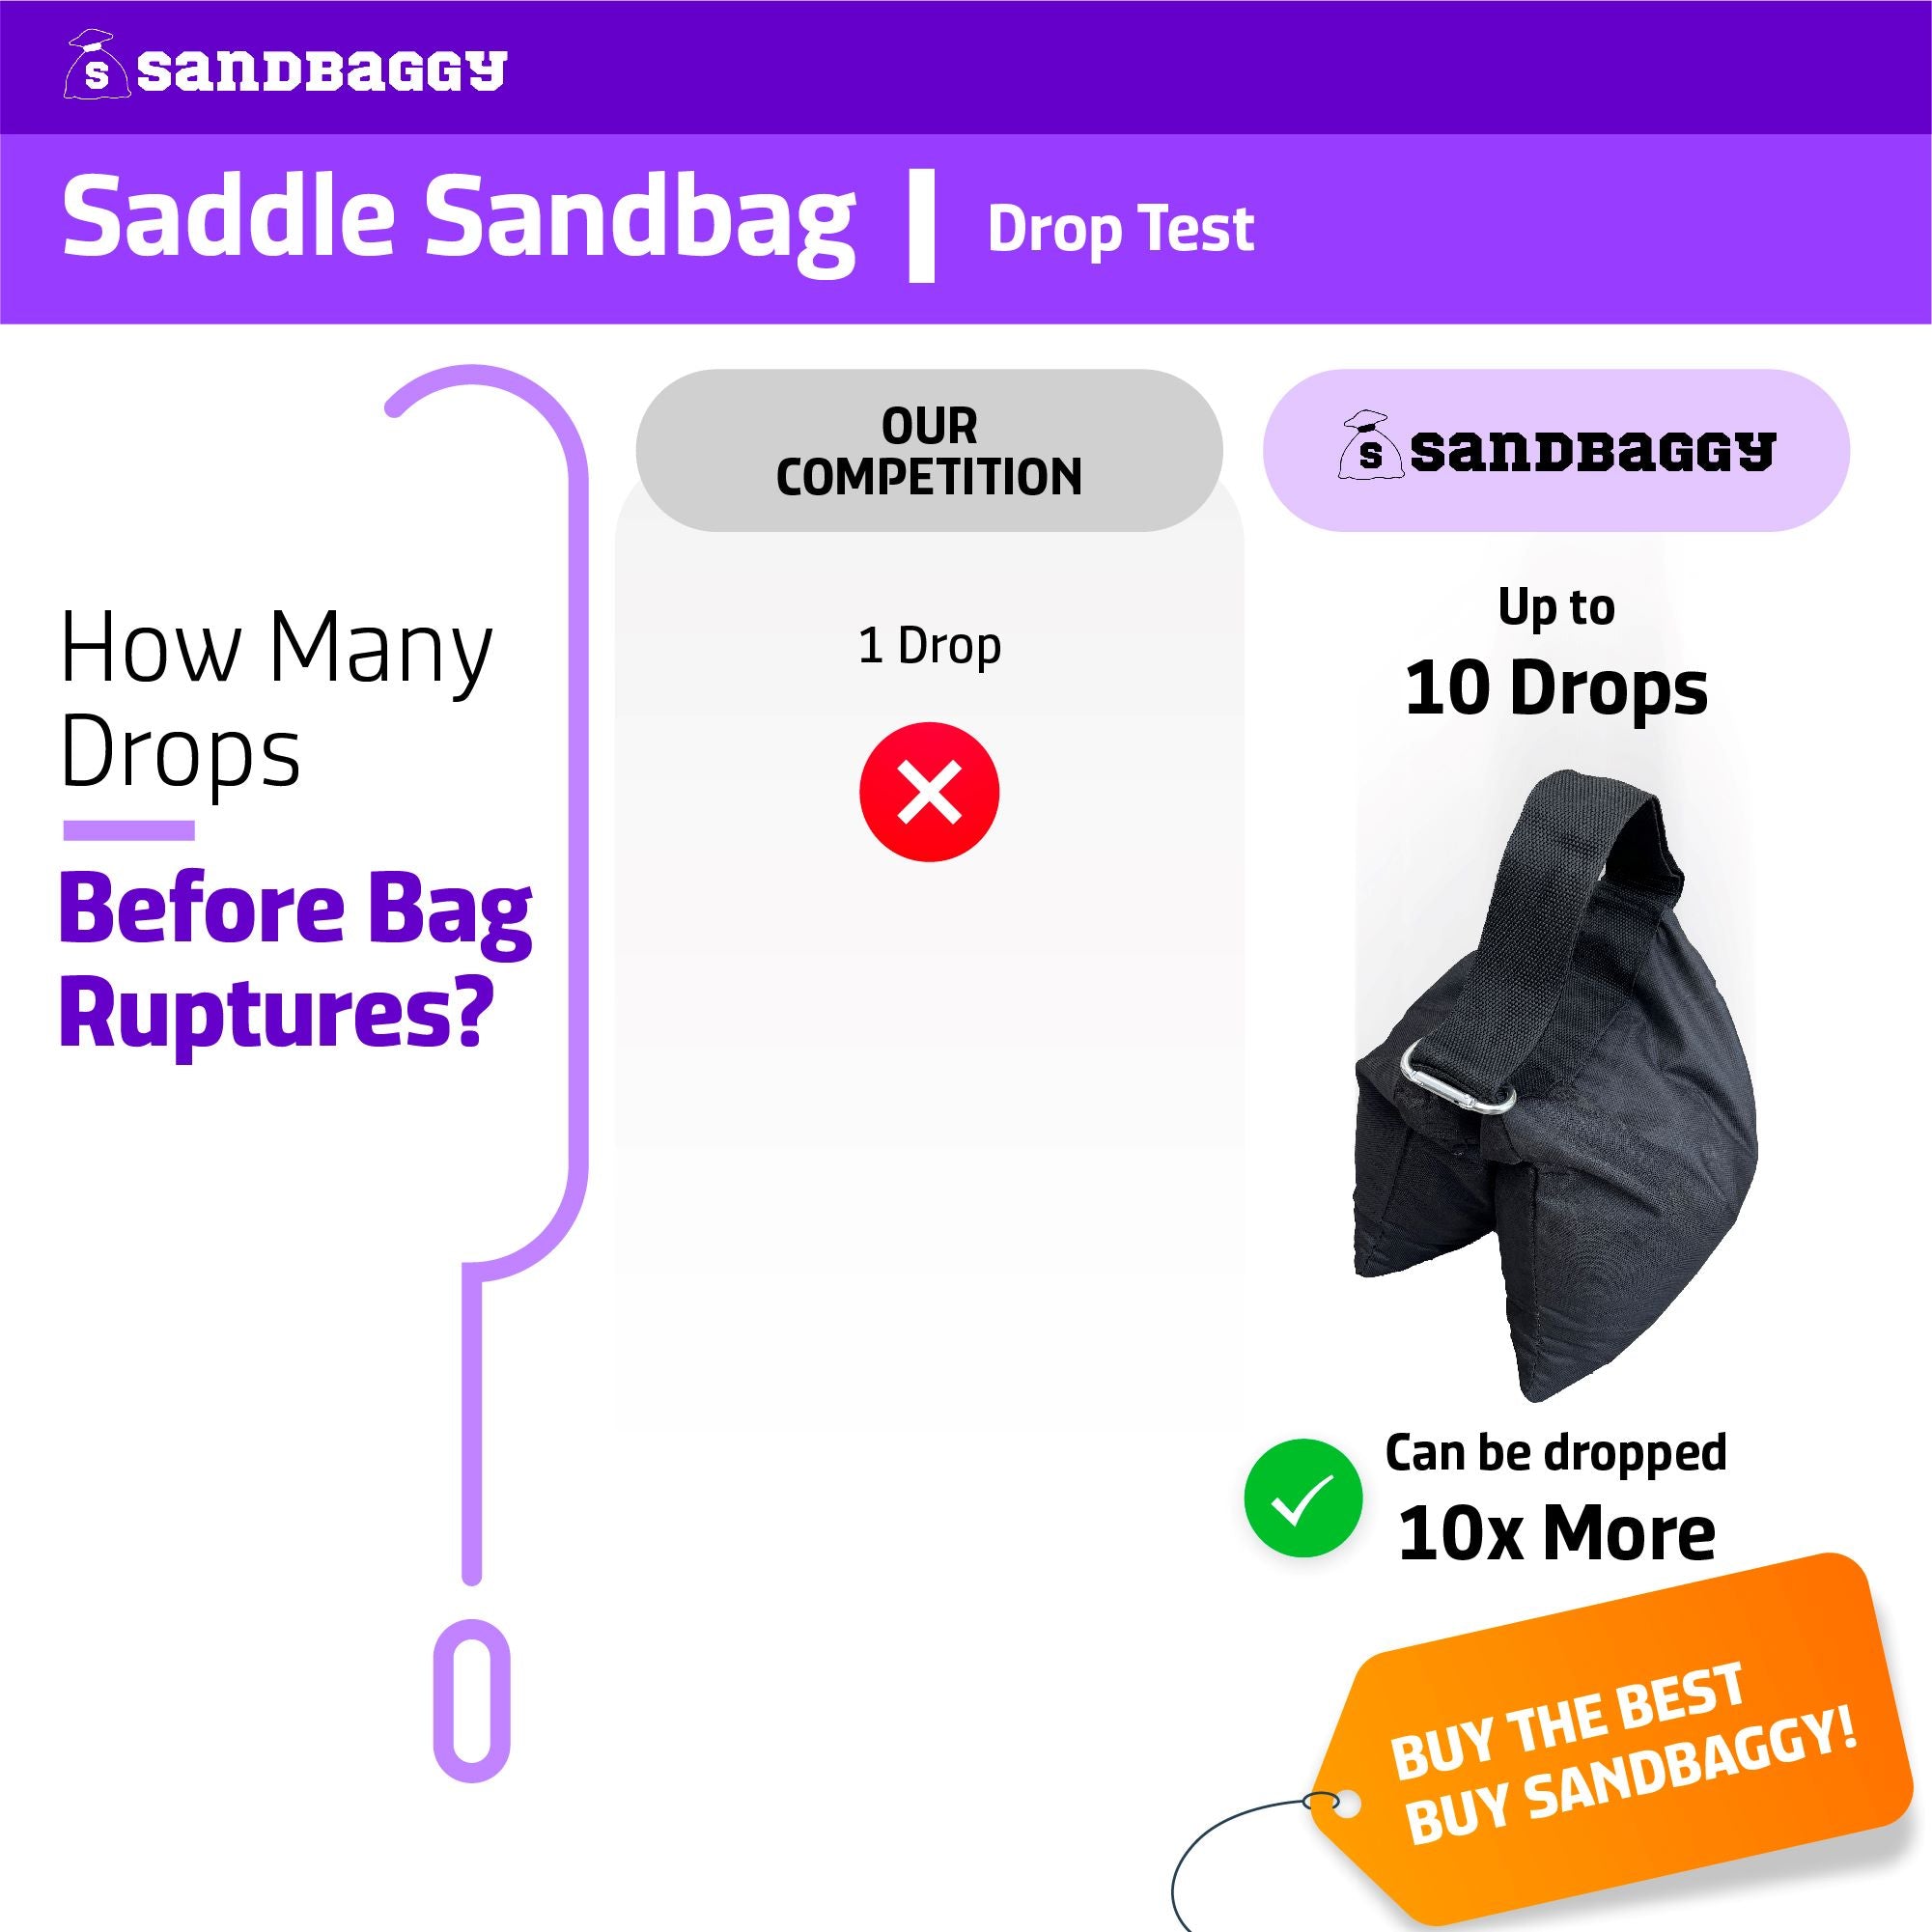 Saddle Sandbags